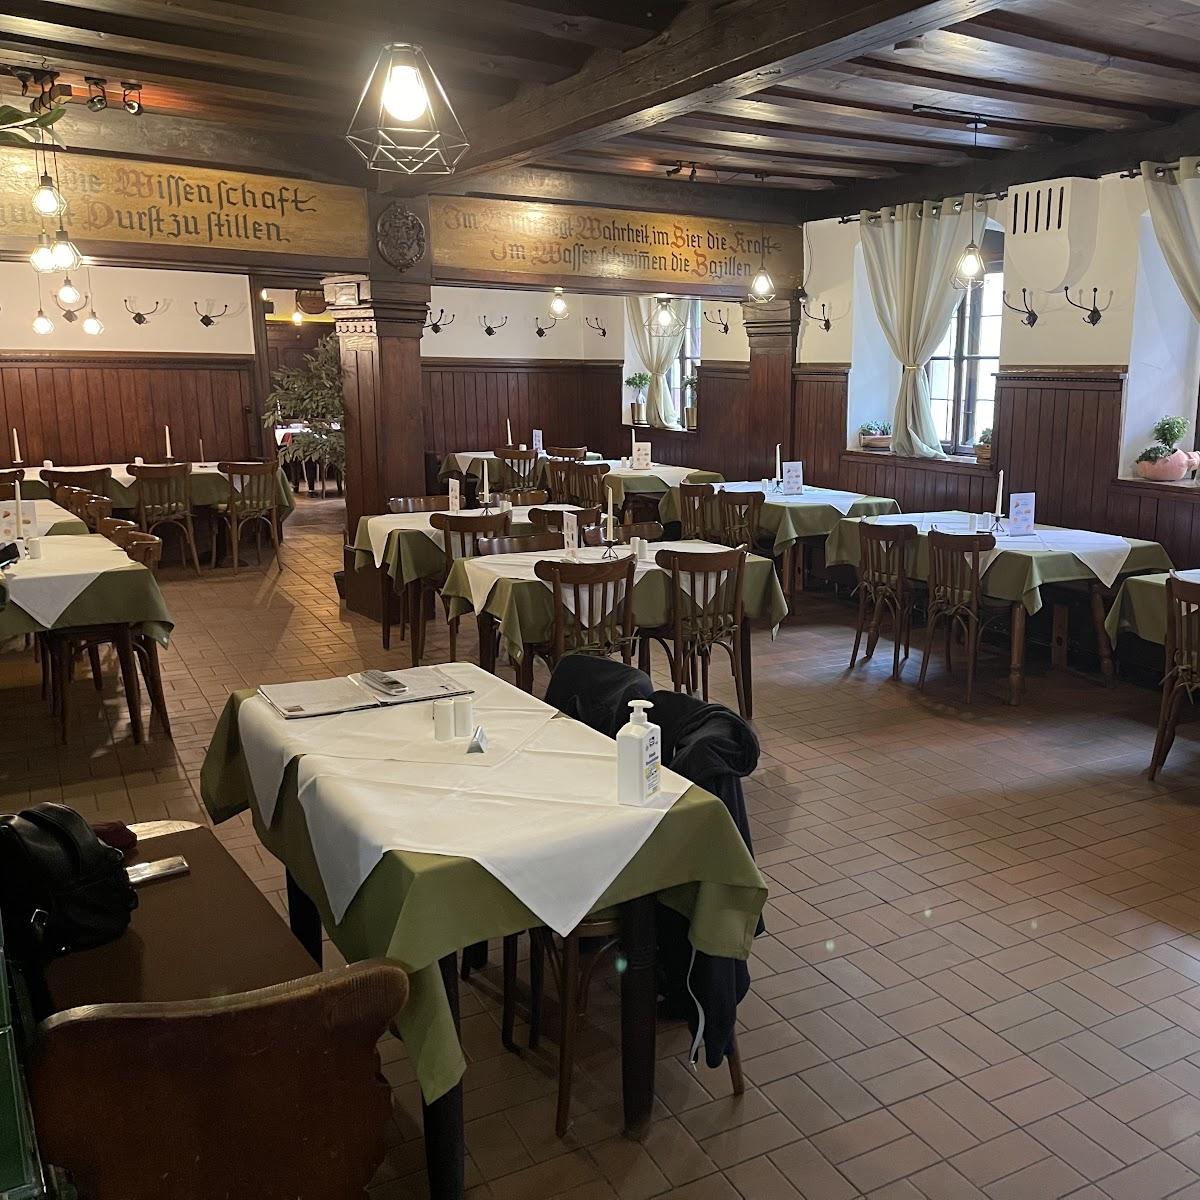 Restaurant "Taverna Stefanos" in Regensburg